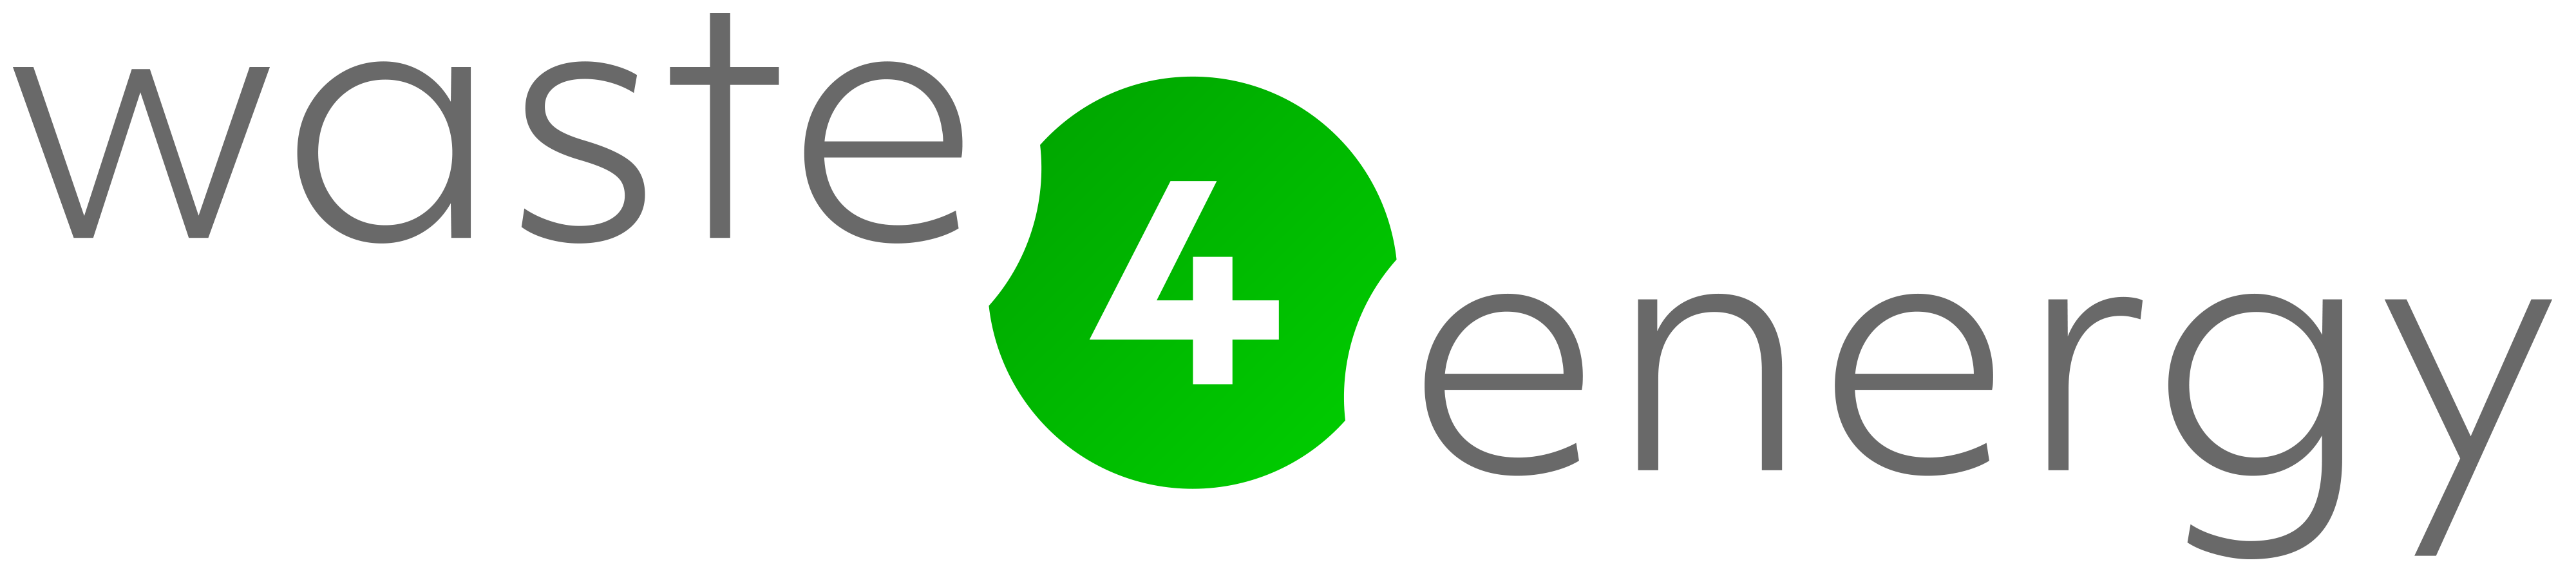 Waste 4 Energy Limited logo